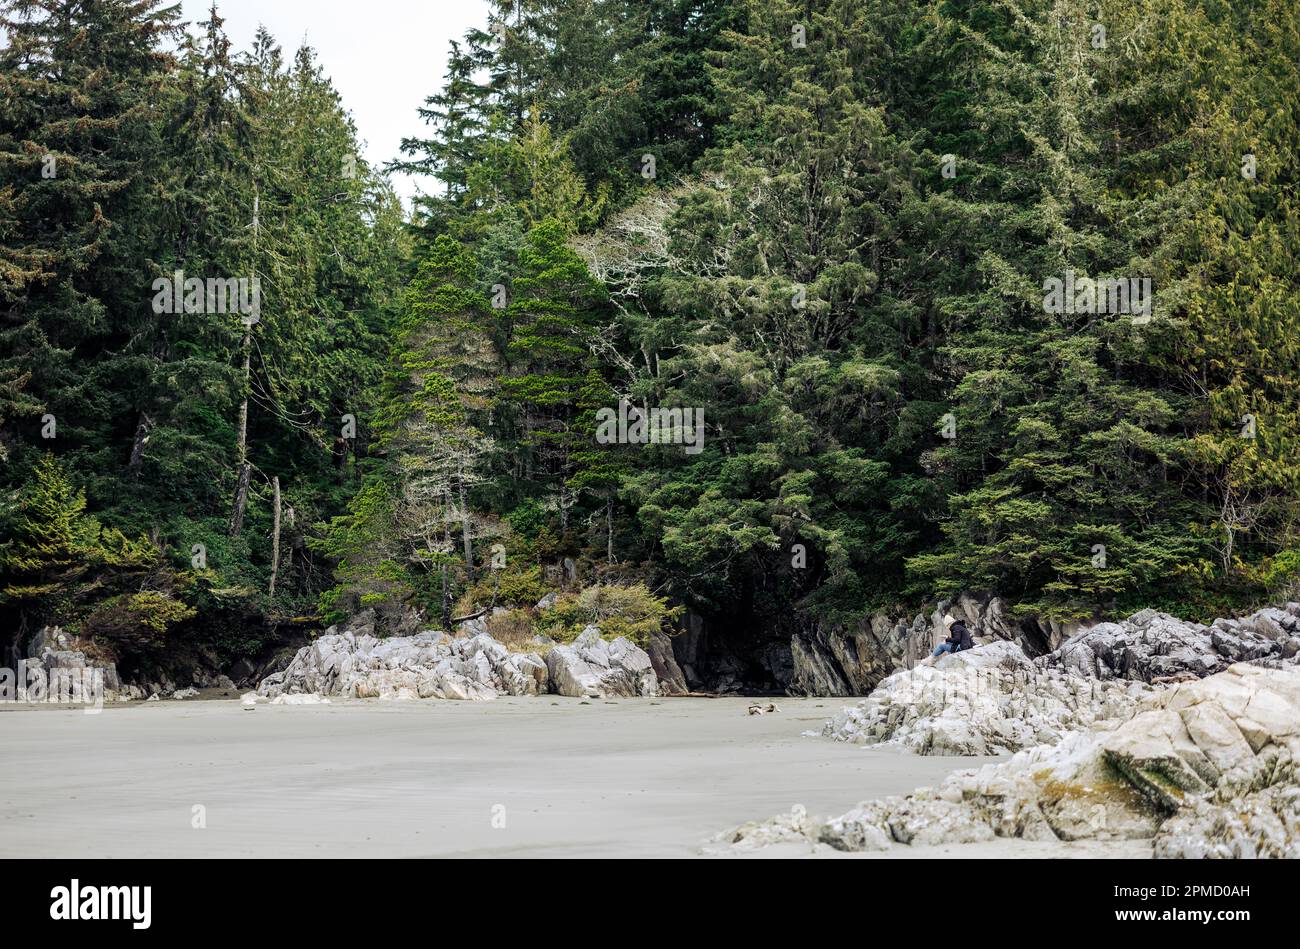 Situato sulla costa occidentale dell'Isola di Vancouver, Tofino sta diventando una destinazione popolare per coloro che vogliono una bellezza incontaminata della natura. Foto Stock